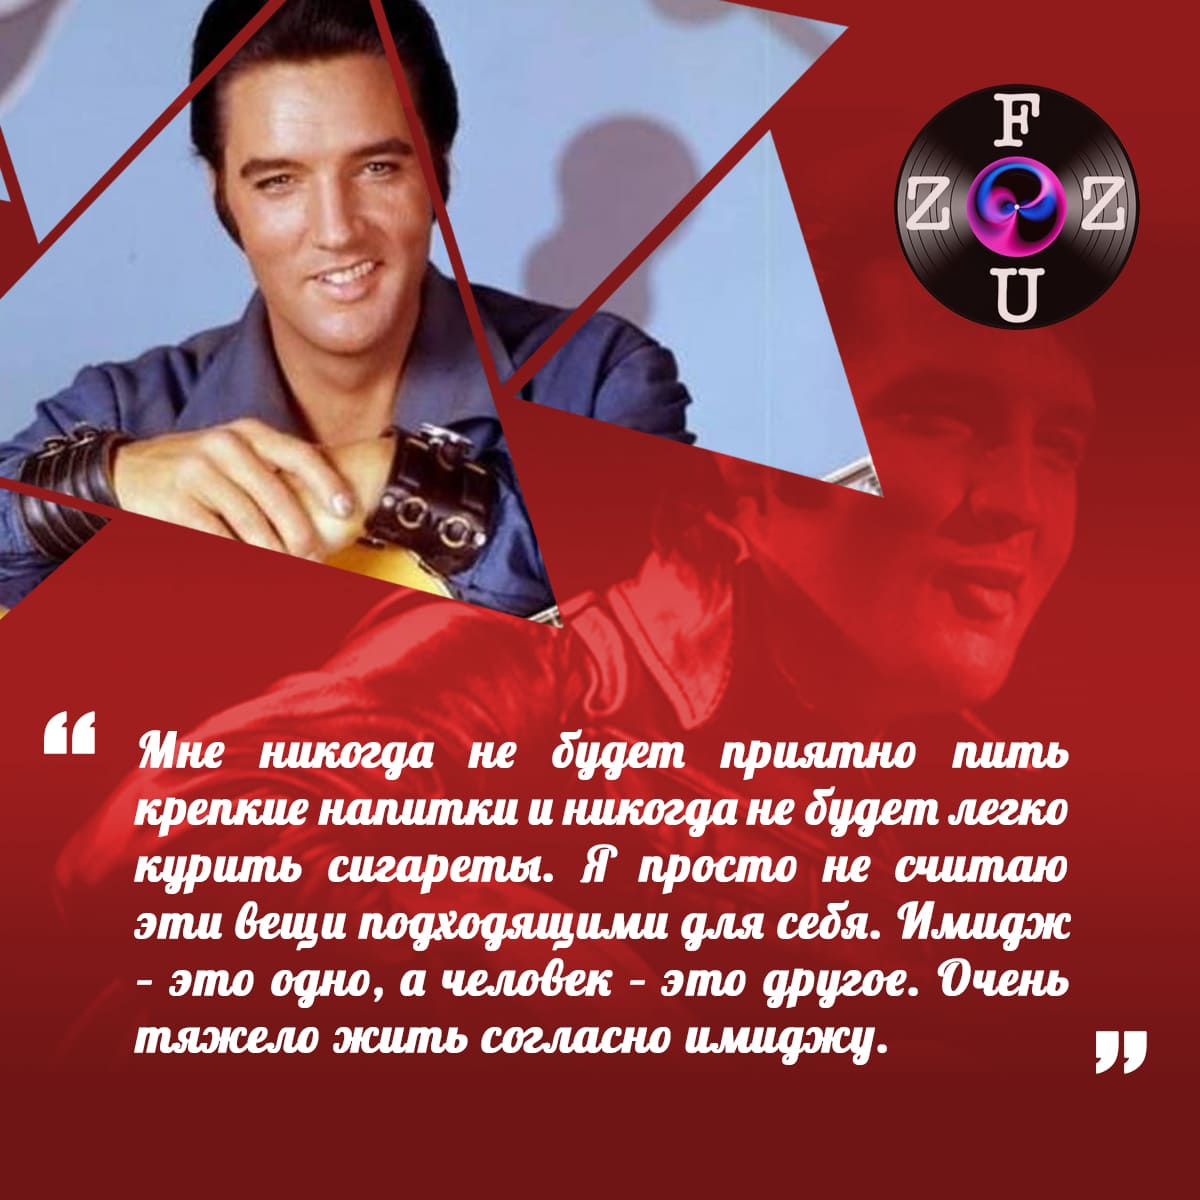 Citações de Elvis Presley...